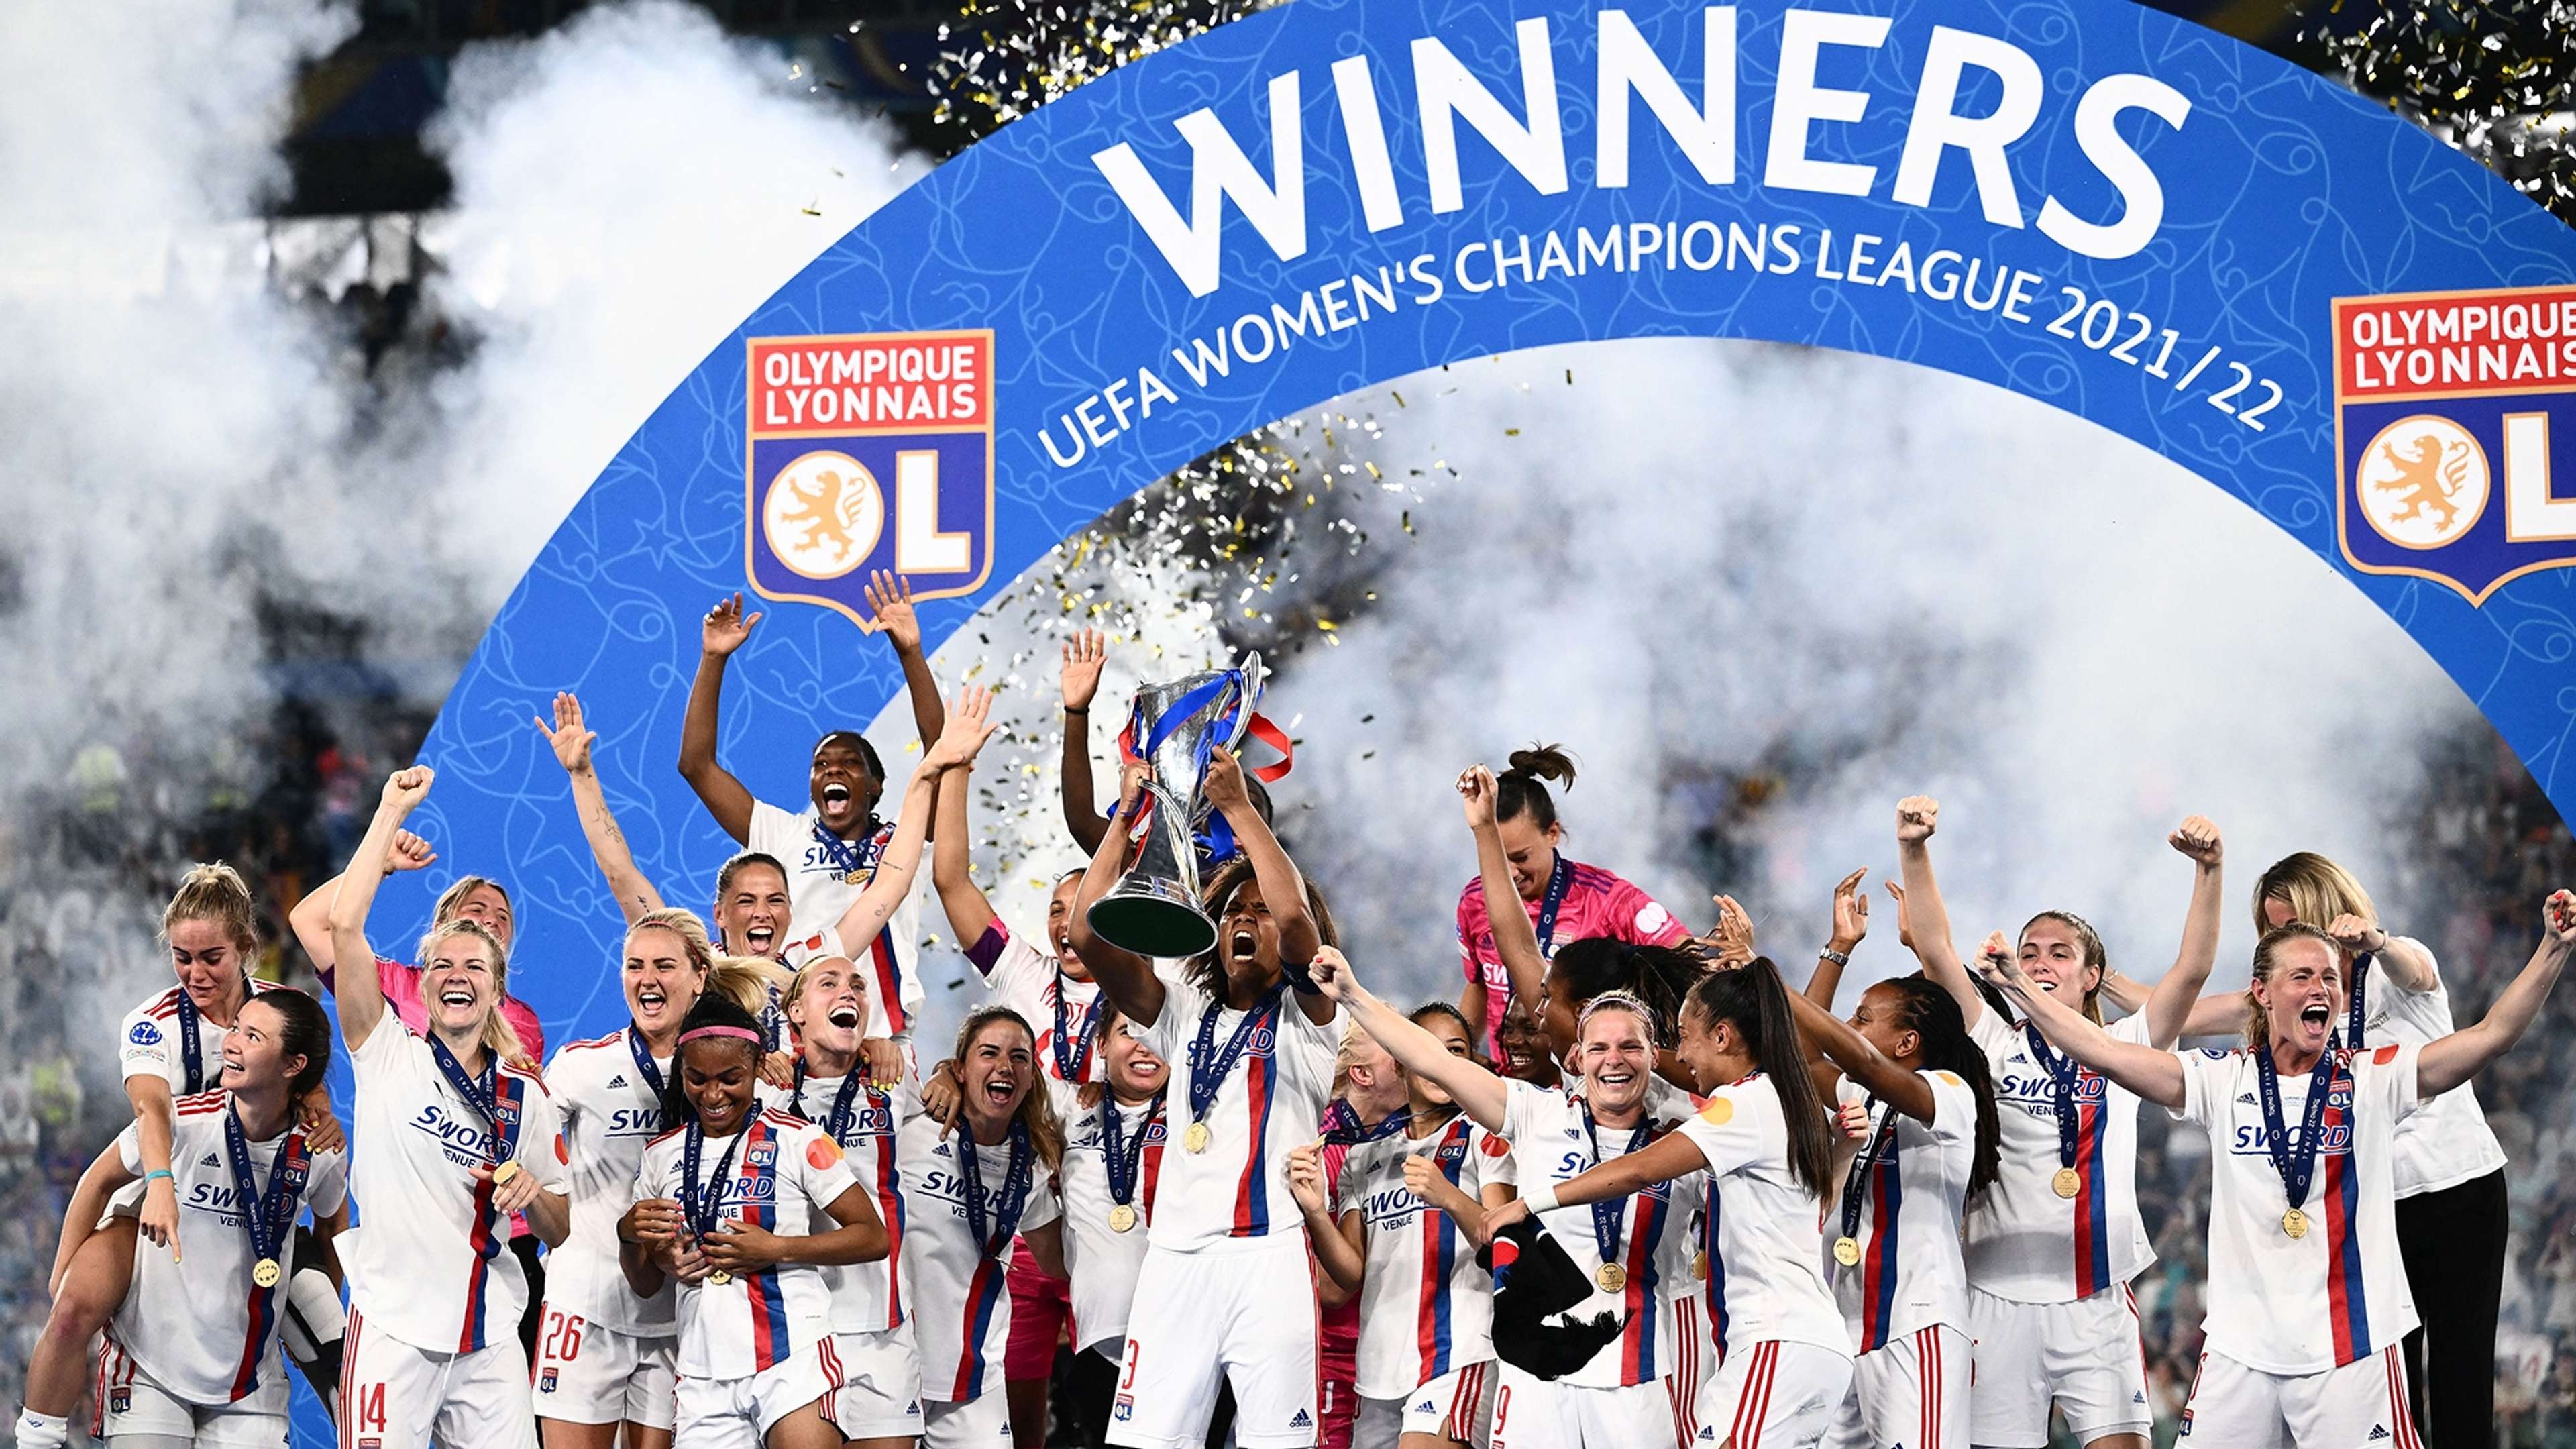 Lyon Women's Champions League